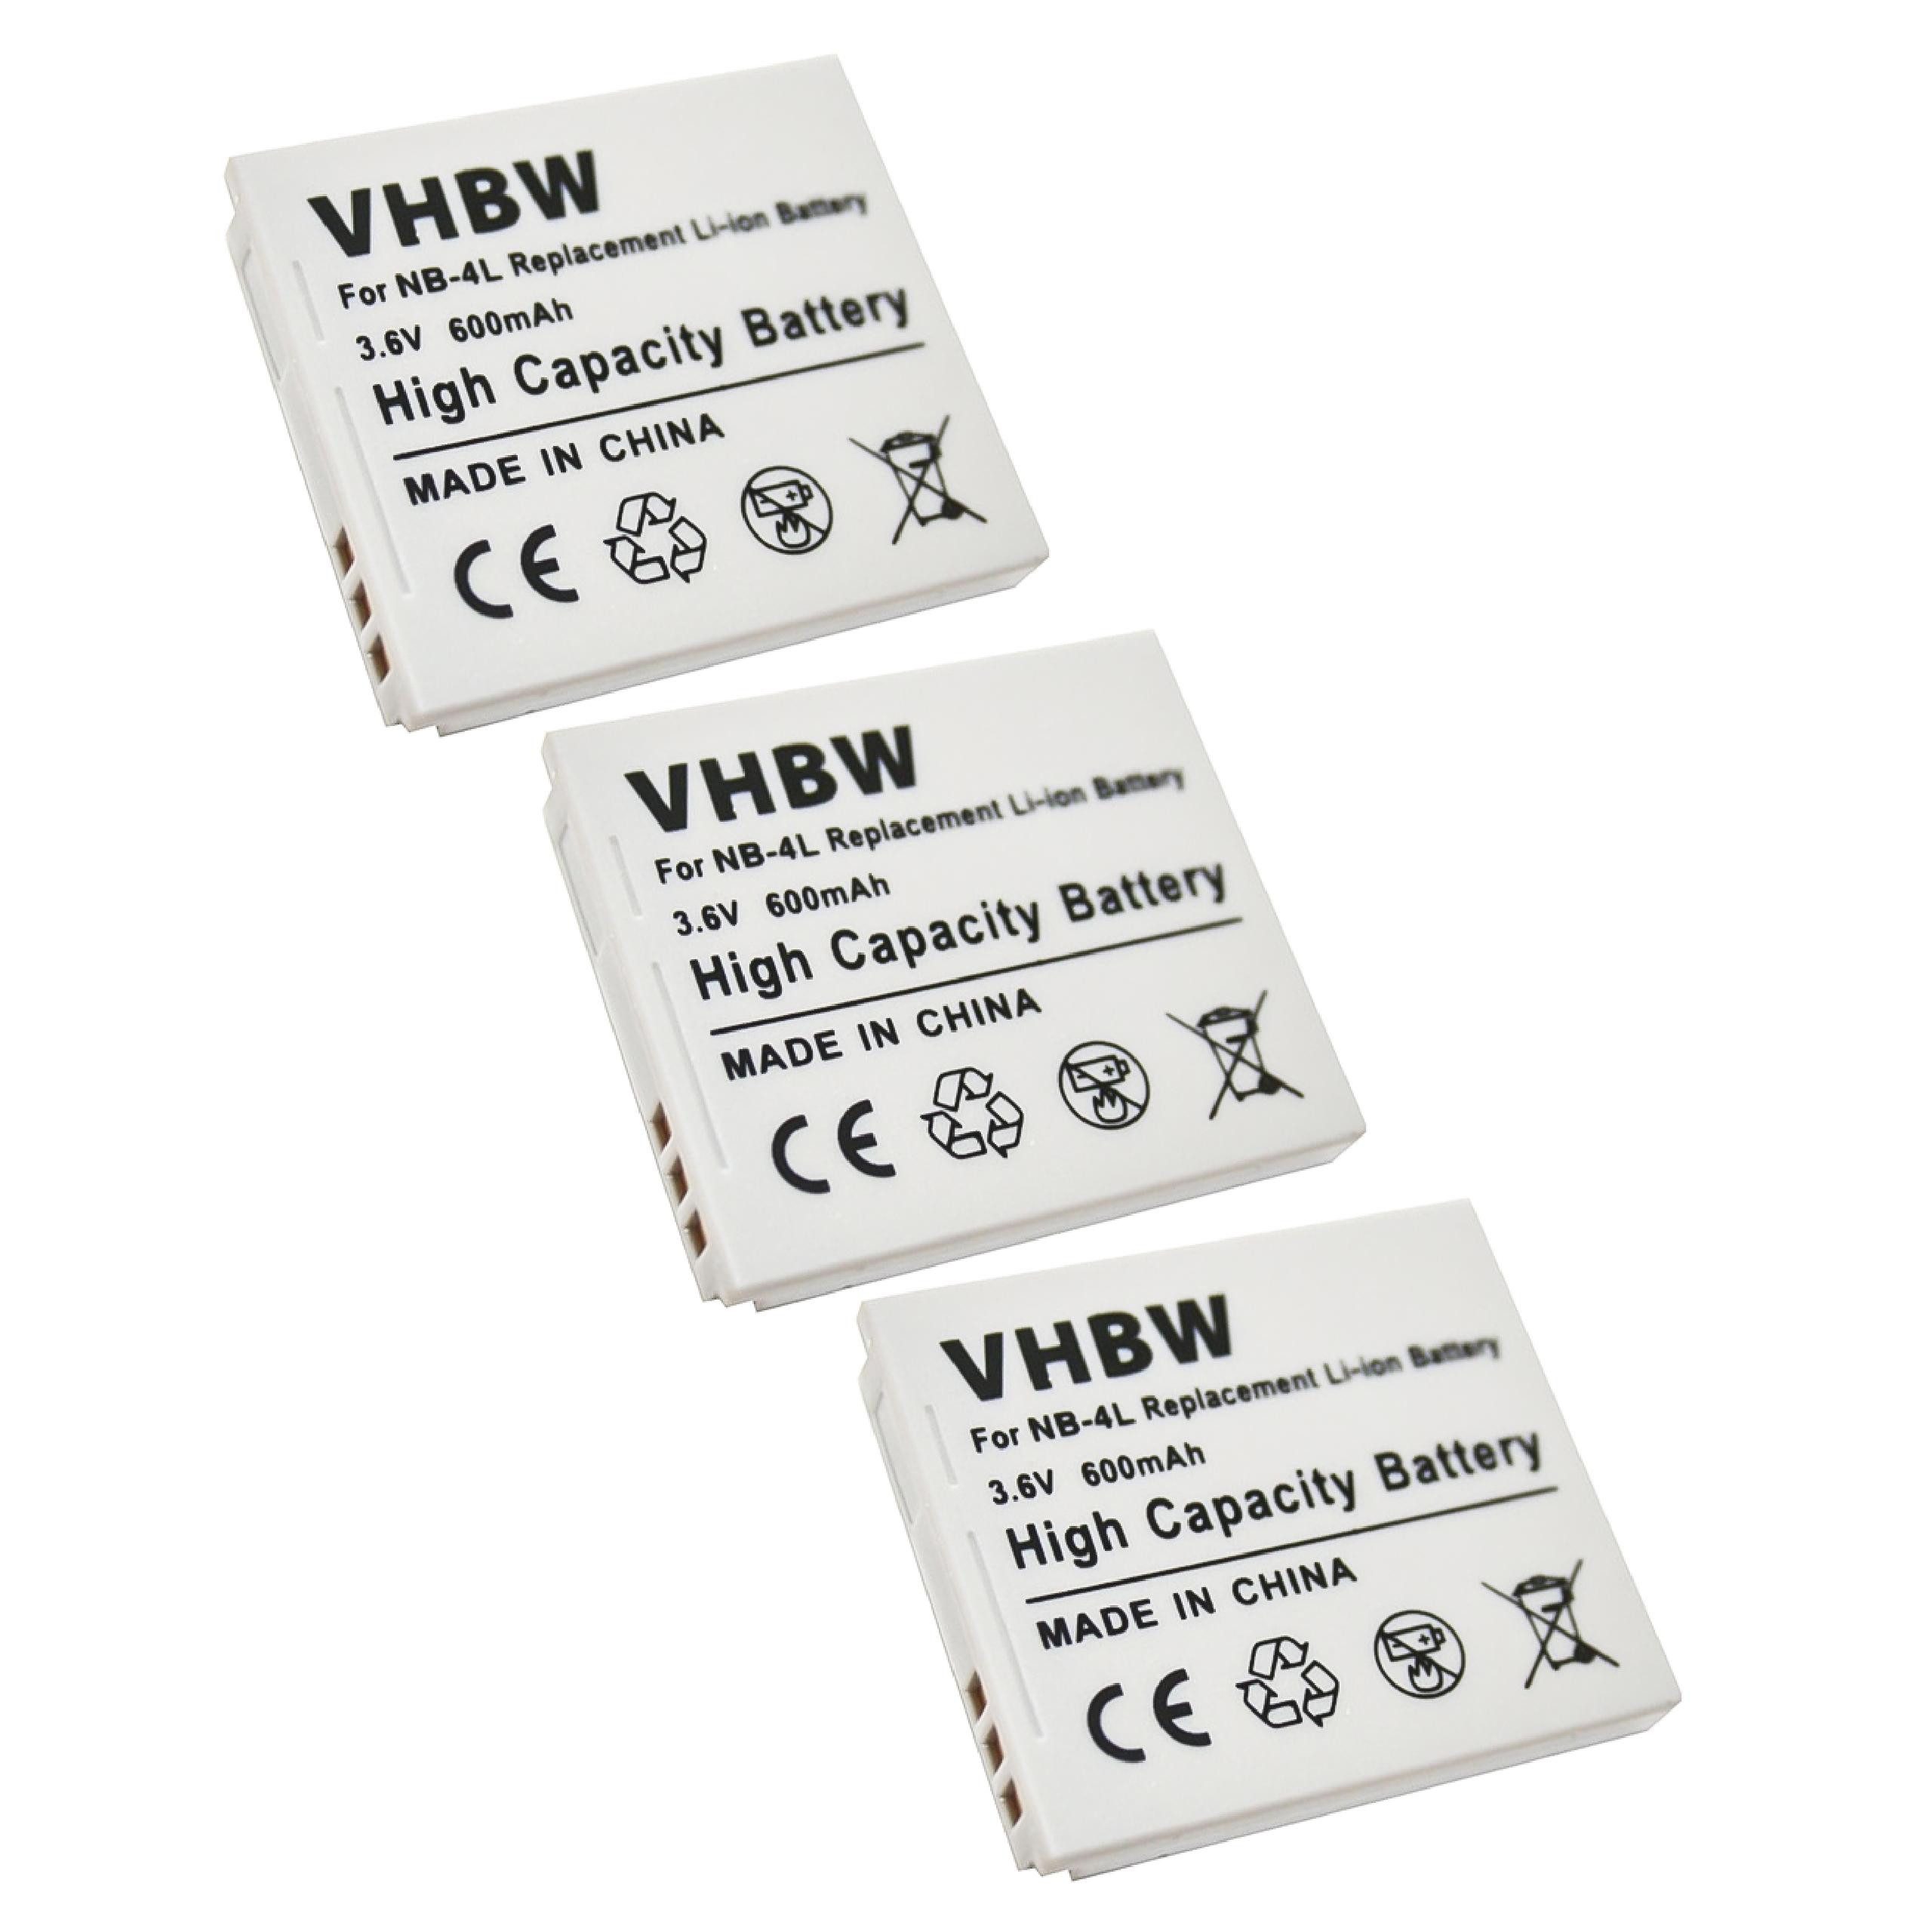 vhbw kompatibel mit Canon Digital Ixus 70, 75, i Zoom, Wireless, i7, 80 is Kamera-Akku Li-Ion 600 mAh (3,6 V) | Akkus und PowerBanks